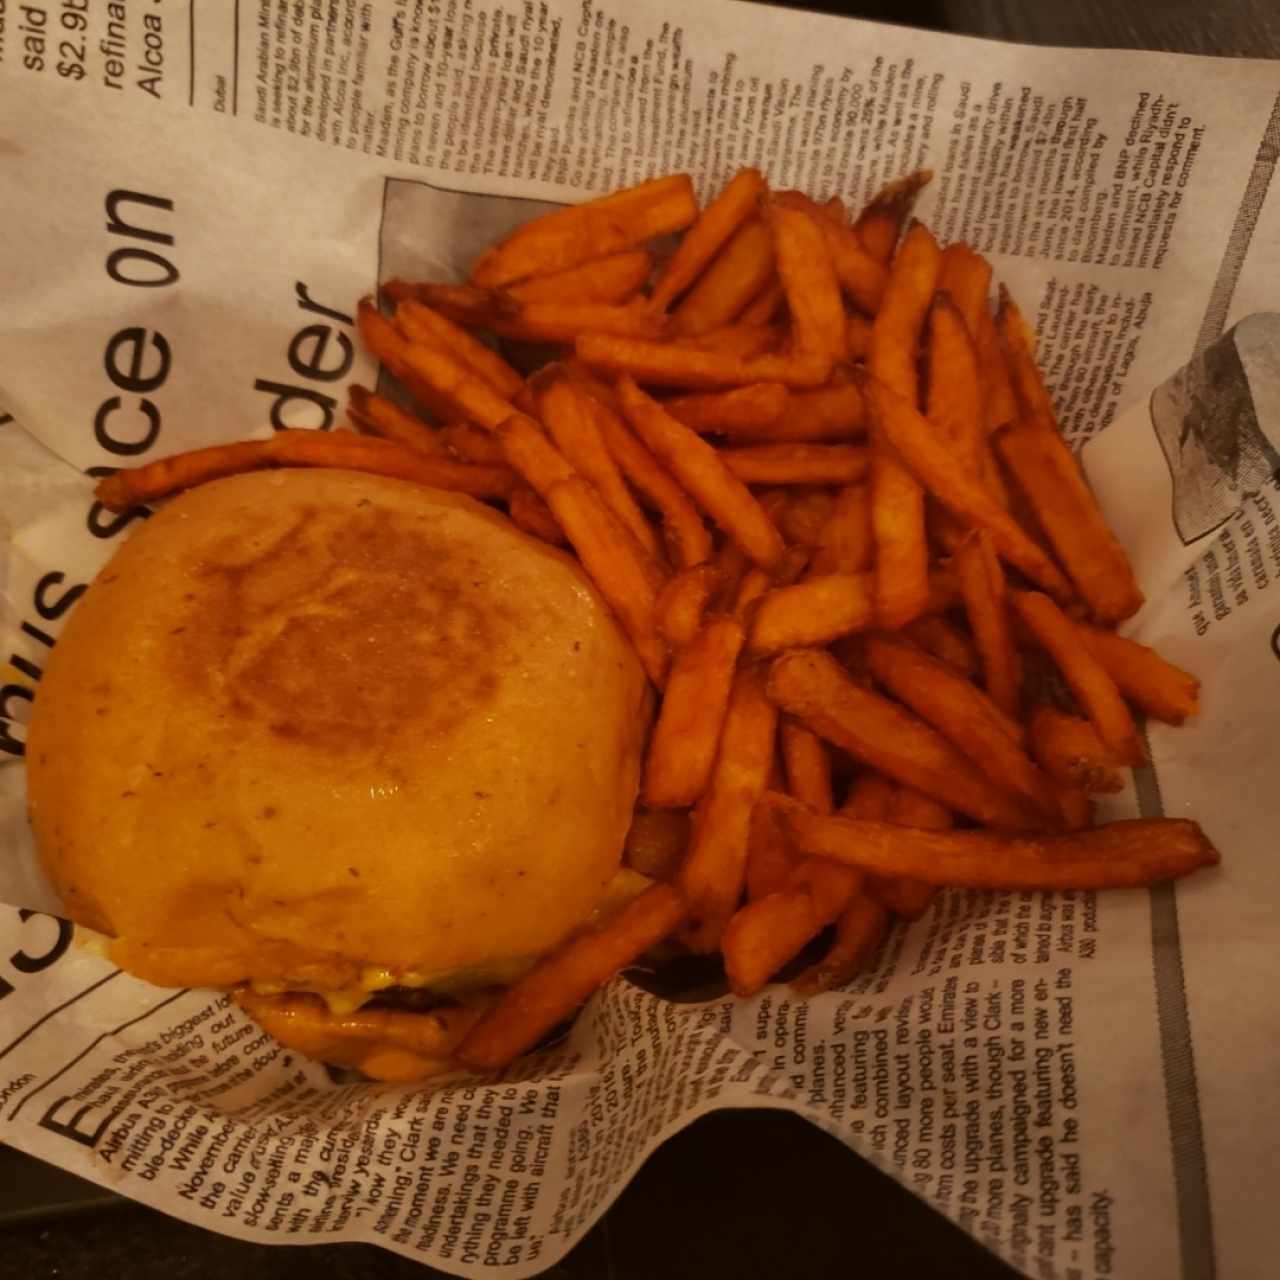 Oh Cheese burger con camote frito